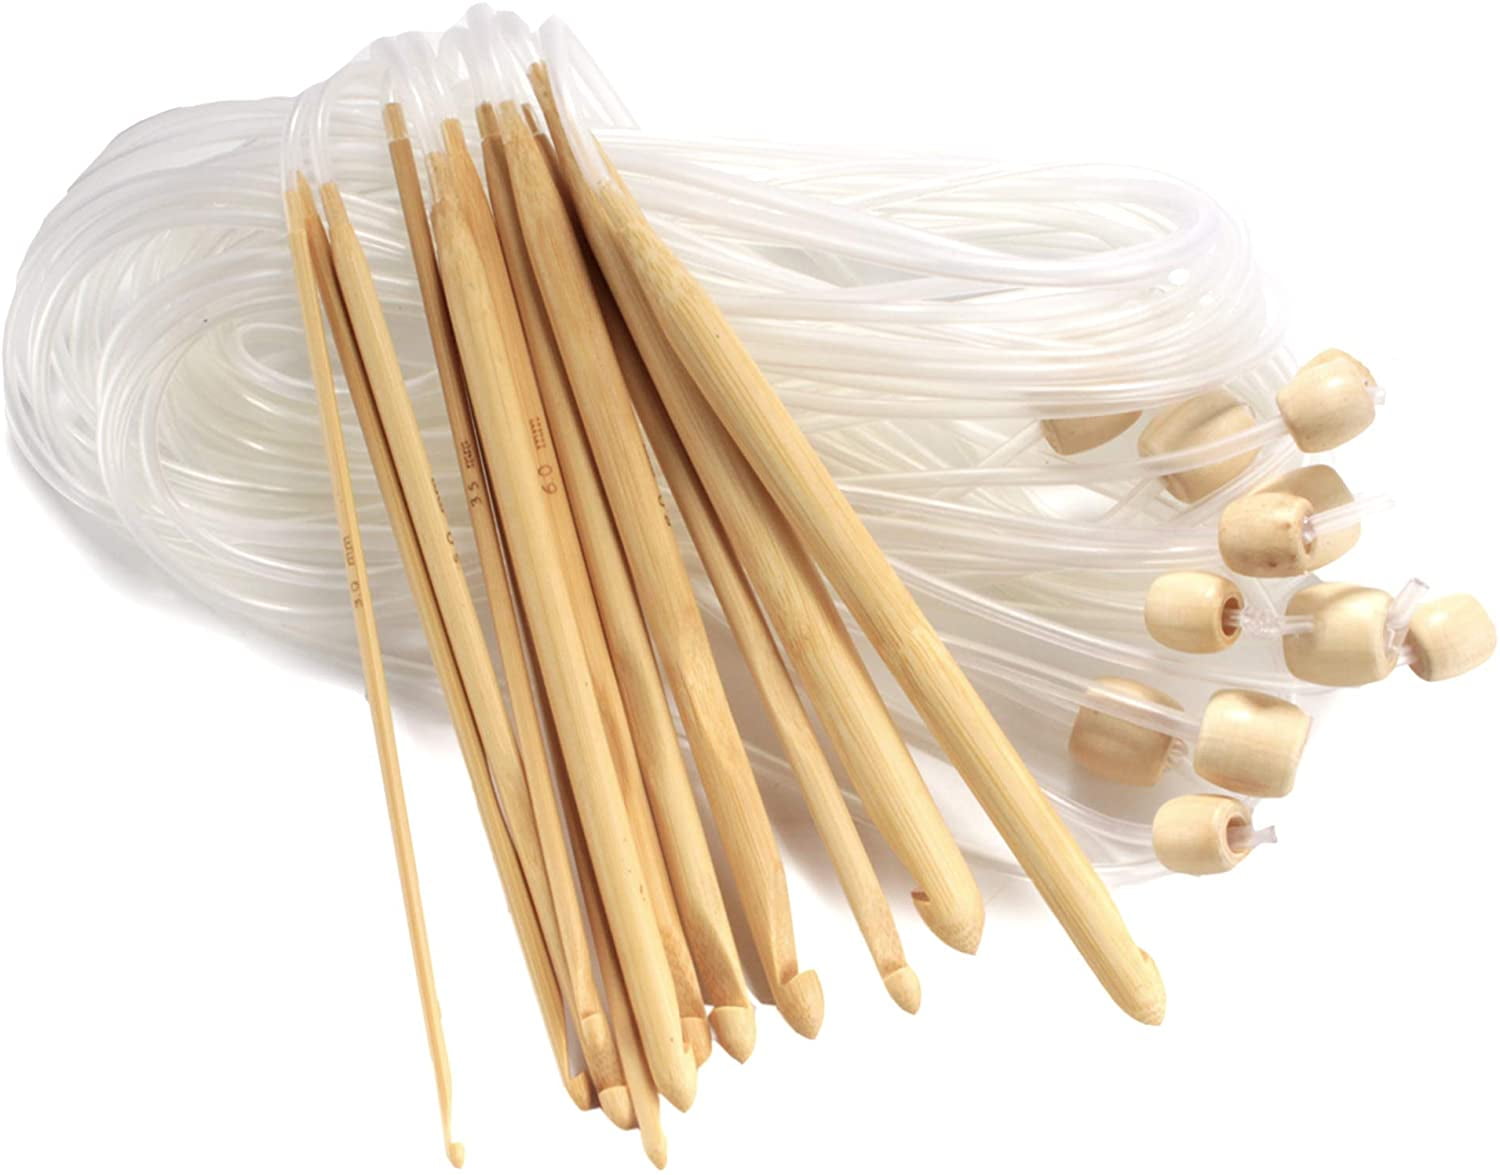 Bamboo Afghan Tunisian Crochet Hooks Set of 12 3mm-10mm hooks or Singles